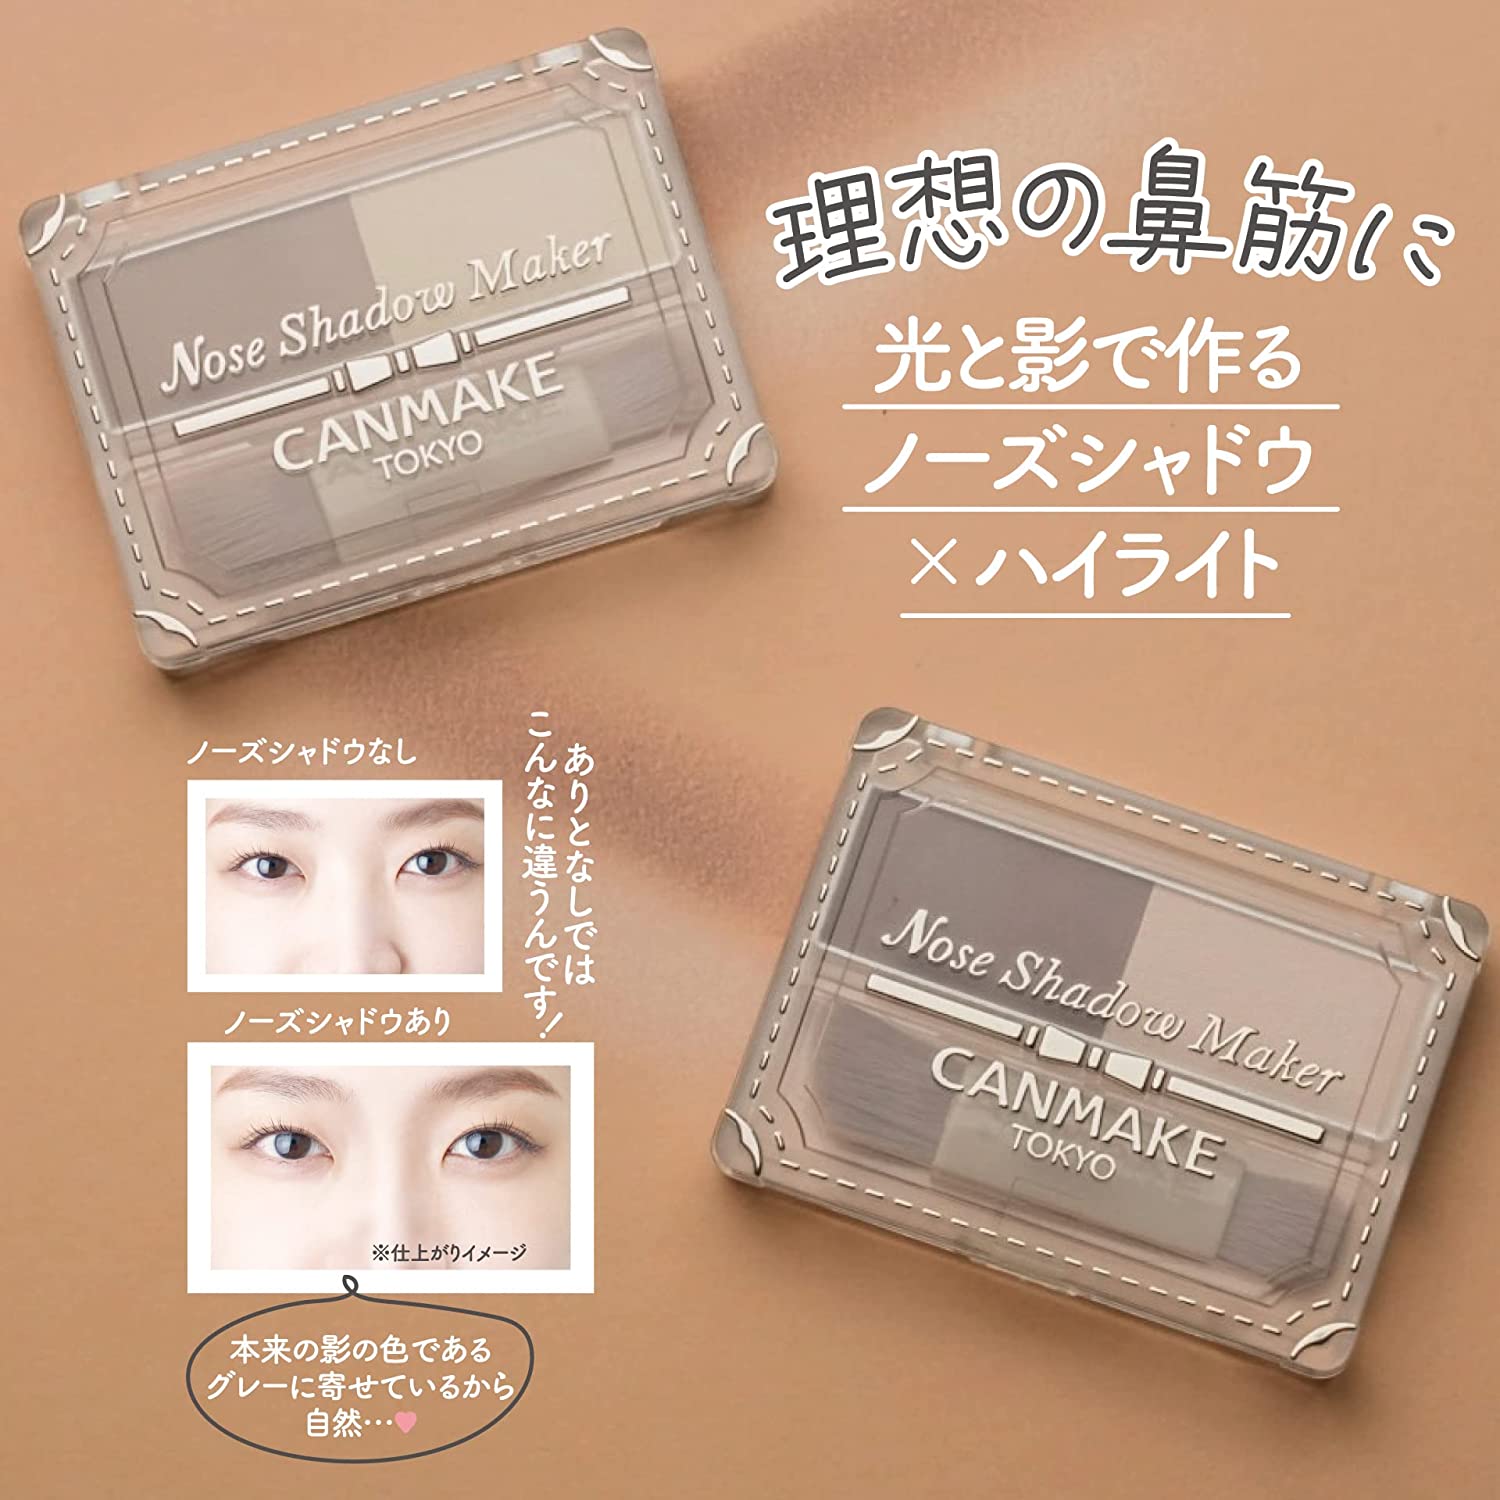 现货5/1发售日本Canmake新品鼻影粉修容阴影自然高光立体便携2色